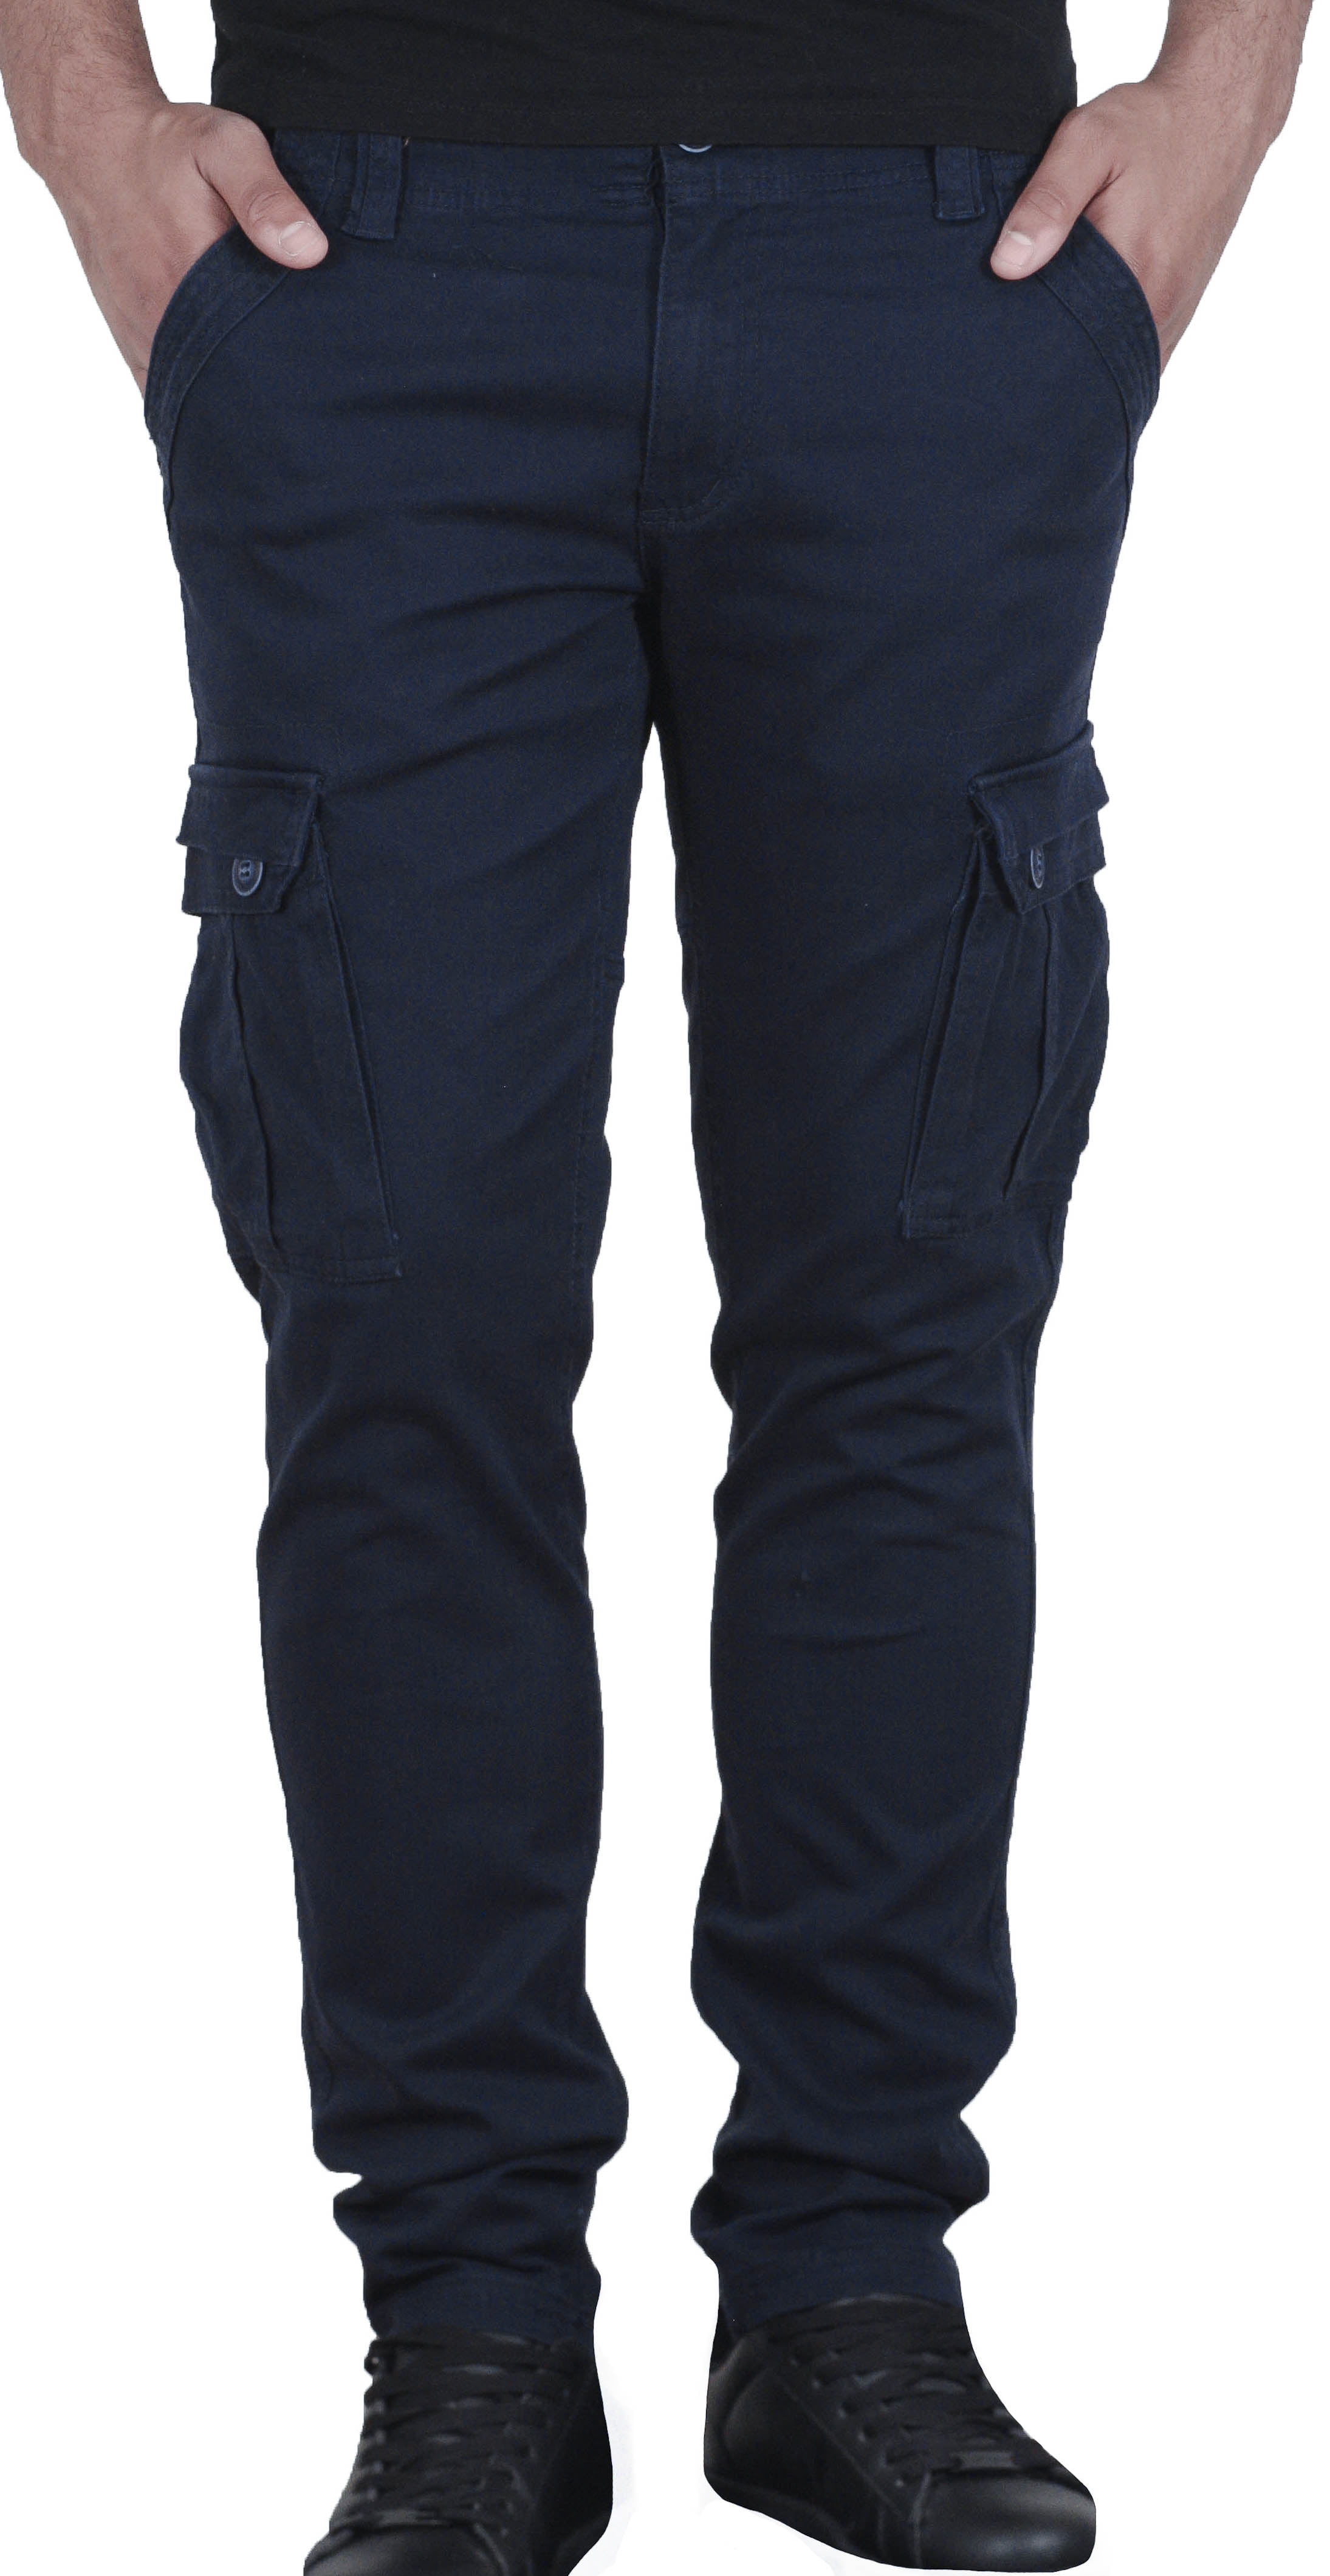 men's navy blue cargo pants